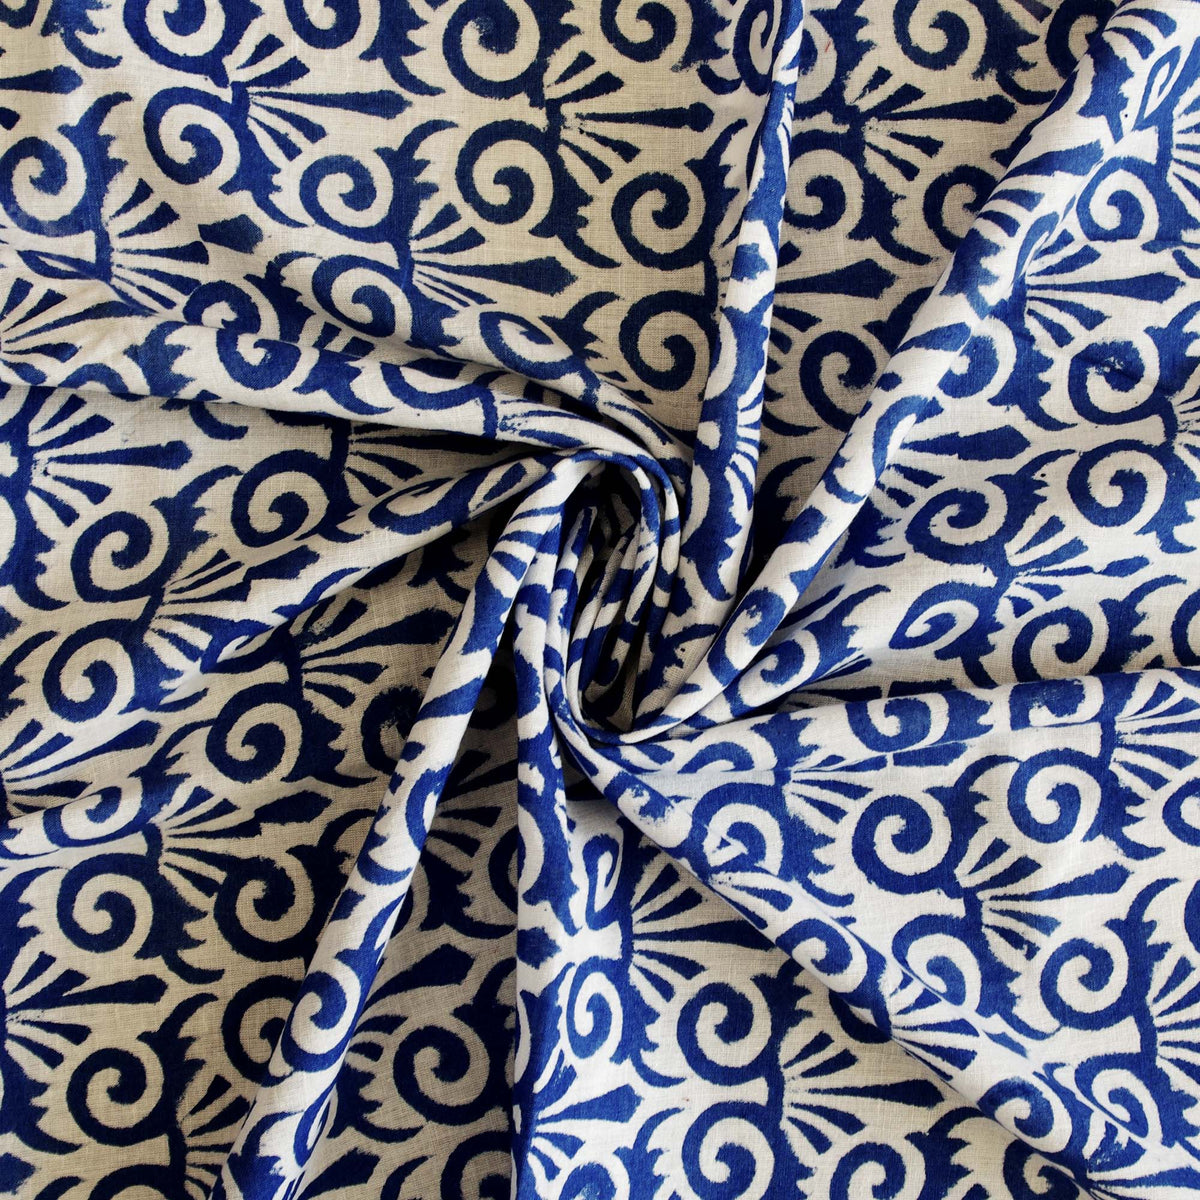 Indian Hand Block Print Blau Weiß 100% Baumwolle Damen Kleid Stoffdesign 41